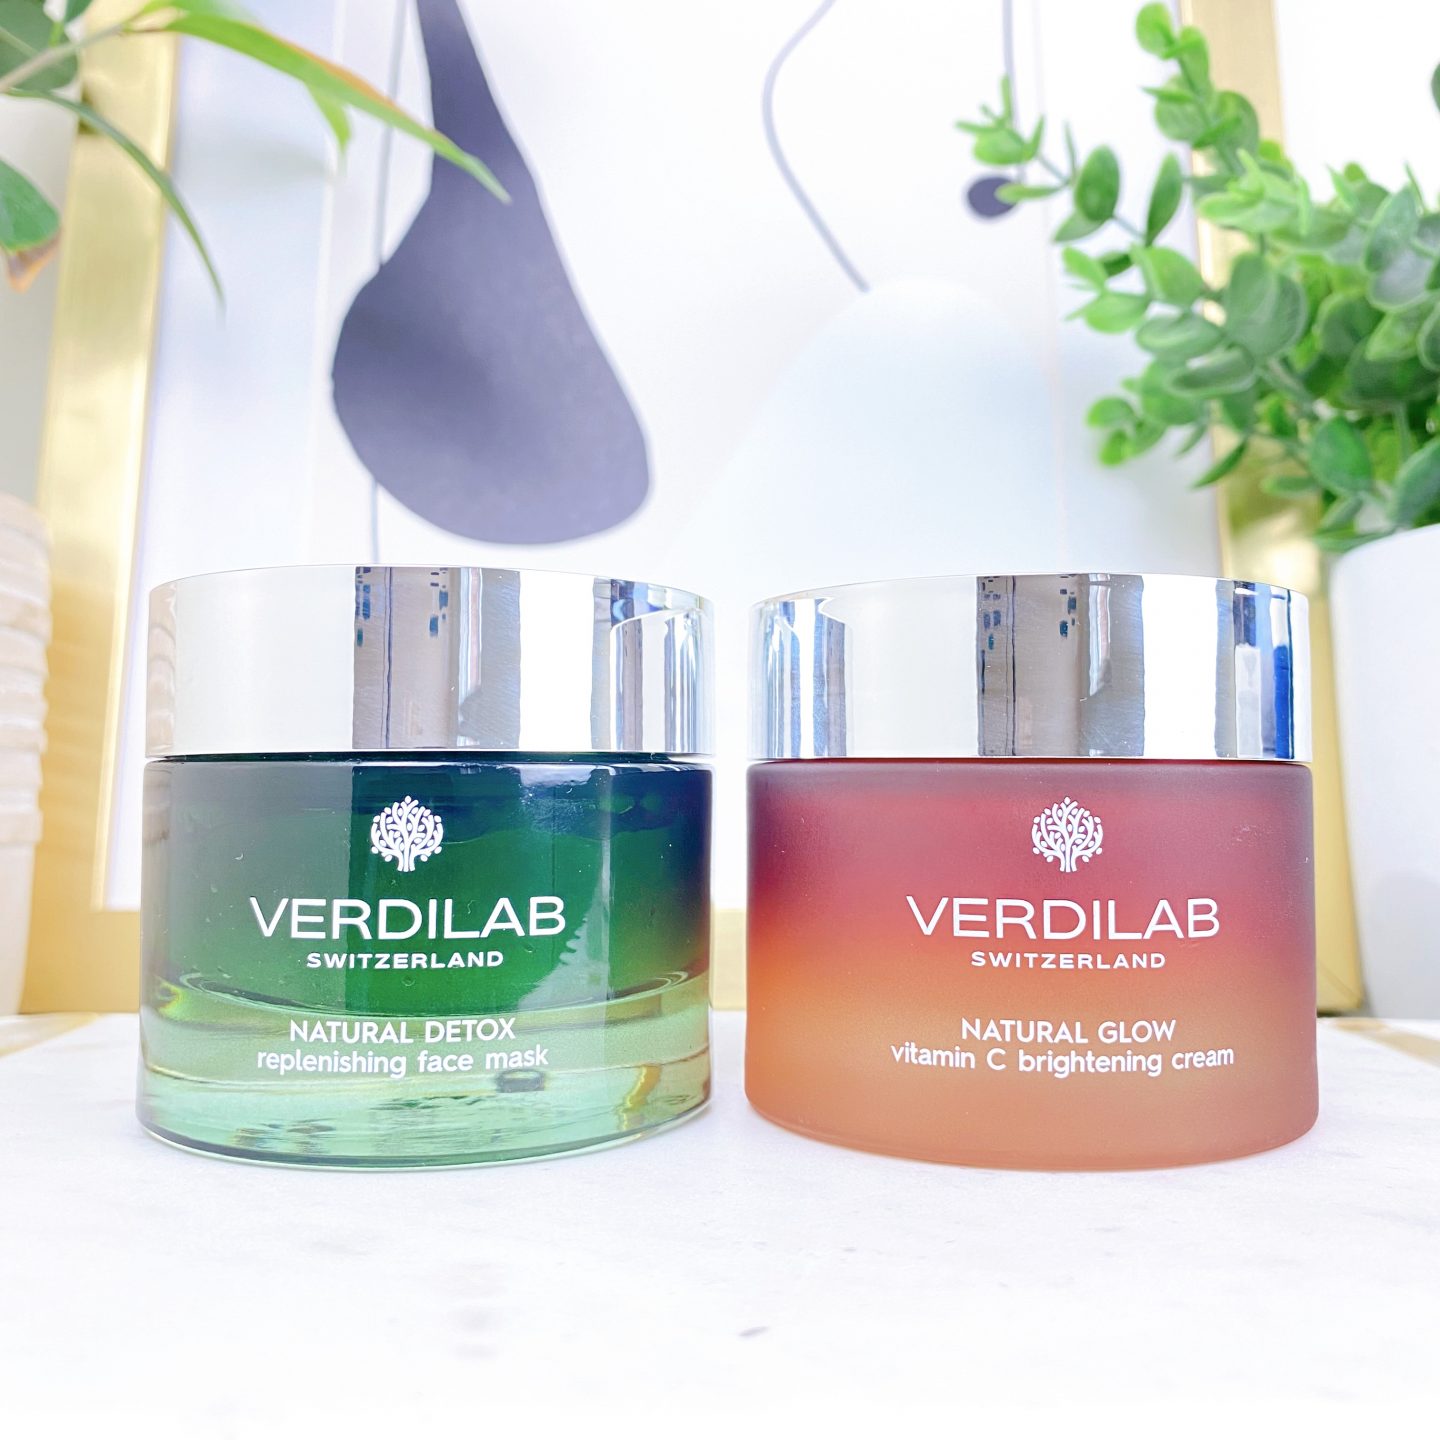 Verdilab Natural Detox Replenishing Face Mask Verdilab Natural Glow Vitamin C Brightening Cream